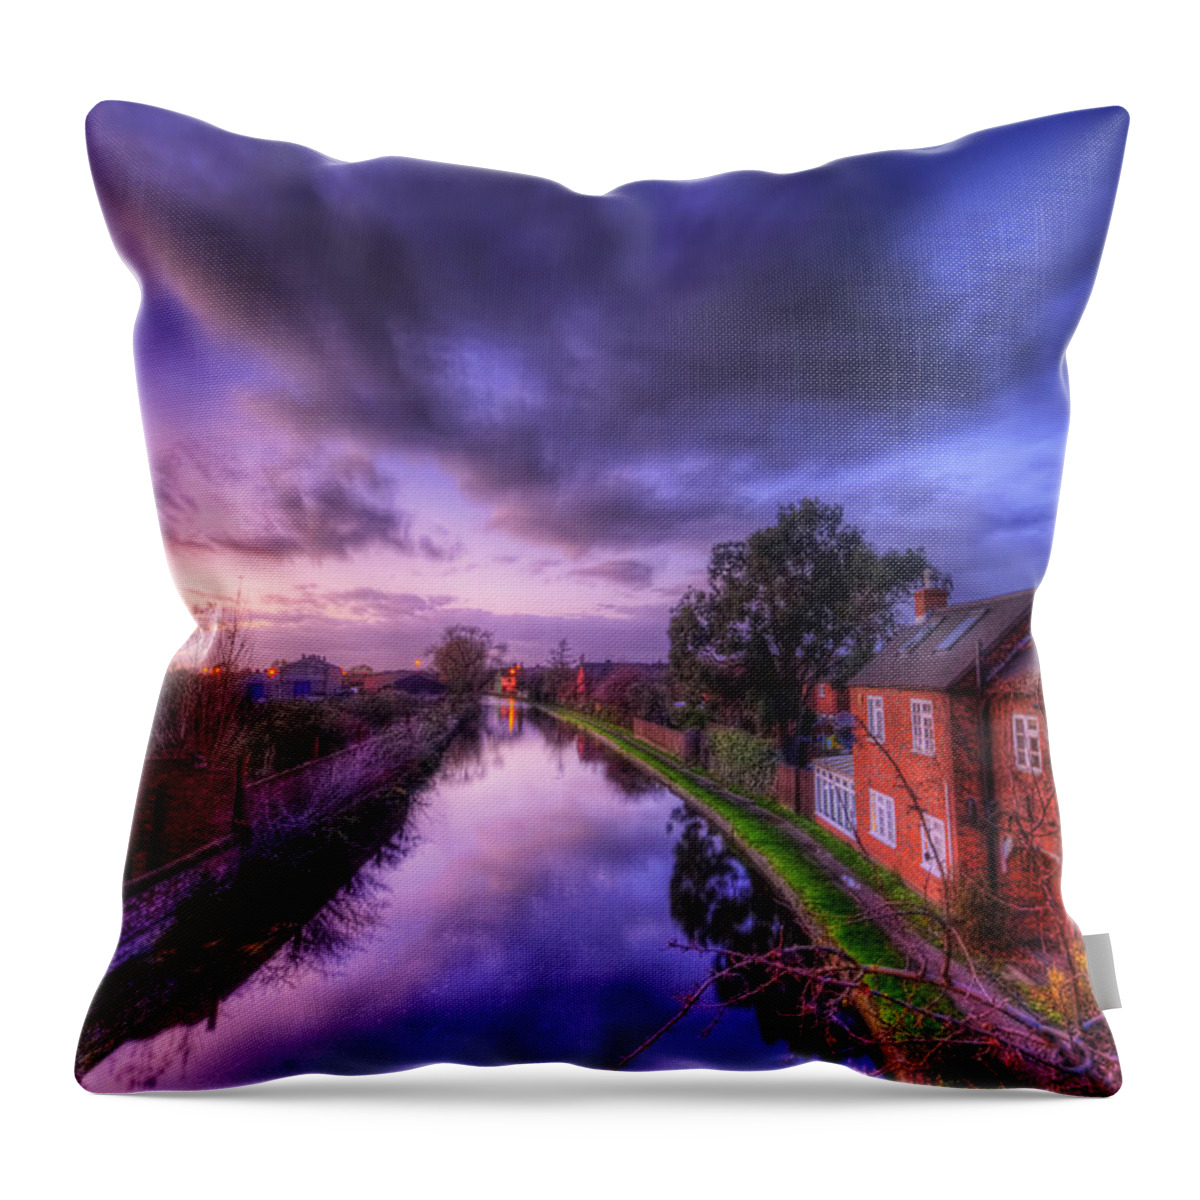 Yhun Suarez Throw Pillow featuring the photograph Sunset At Loughborough by Yhun Suarez